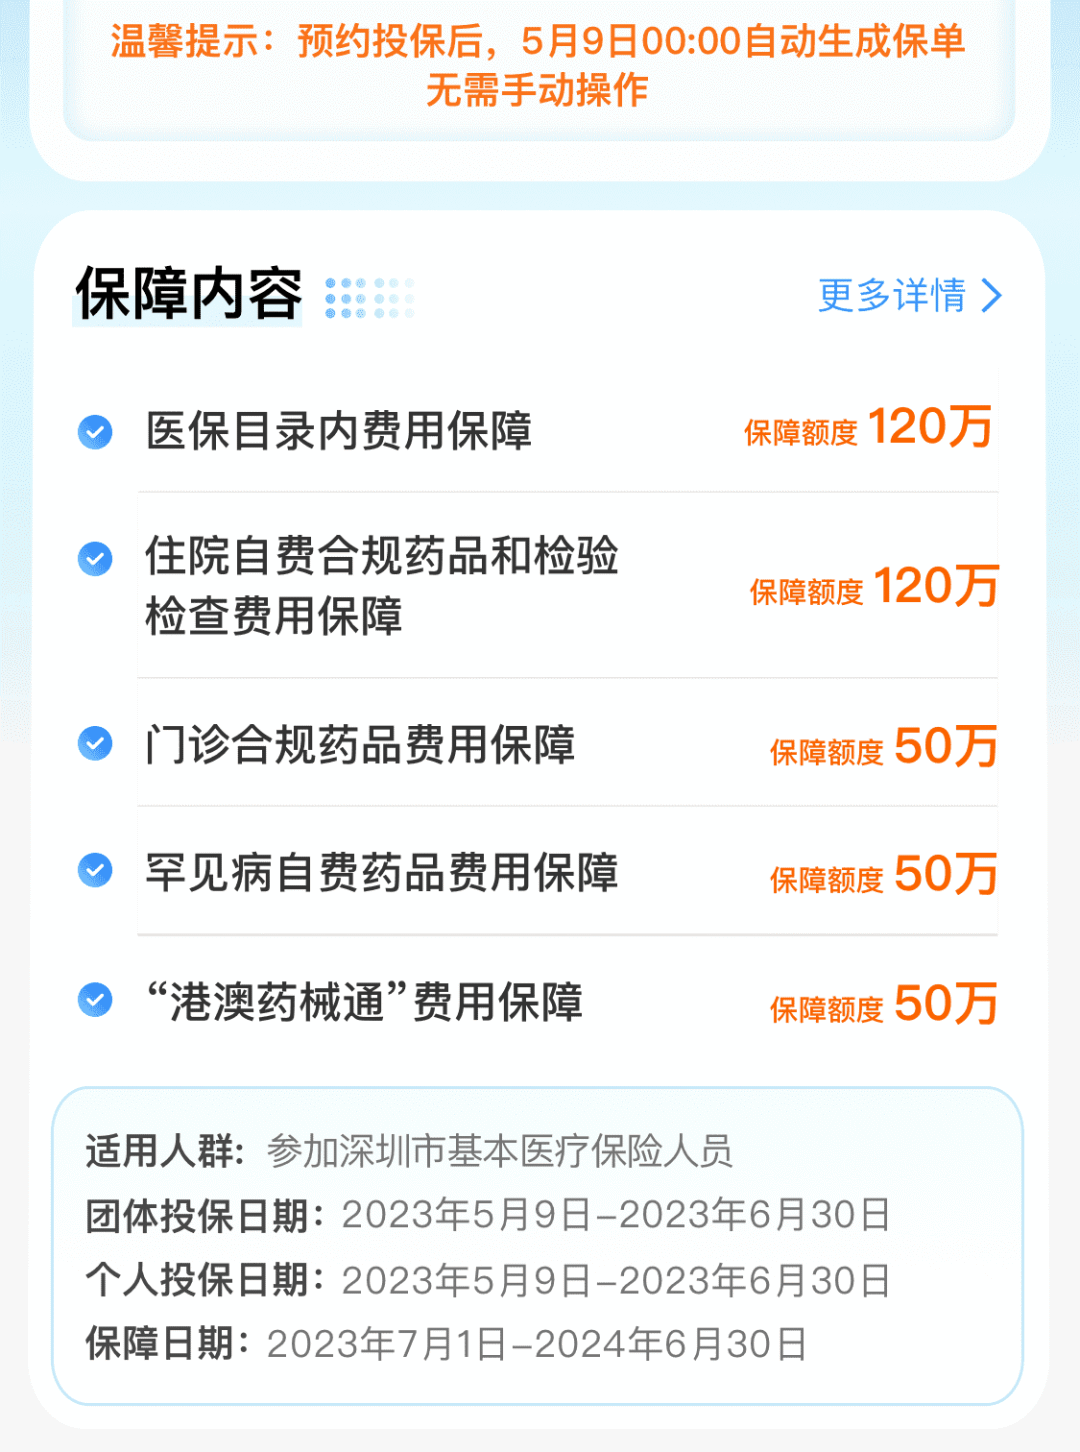  深圳惠民保今日上线，原重疾险升级 行业资讯